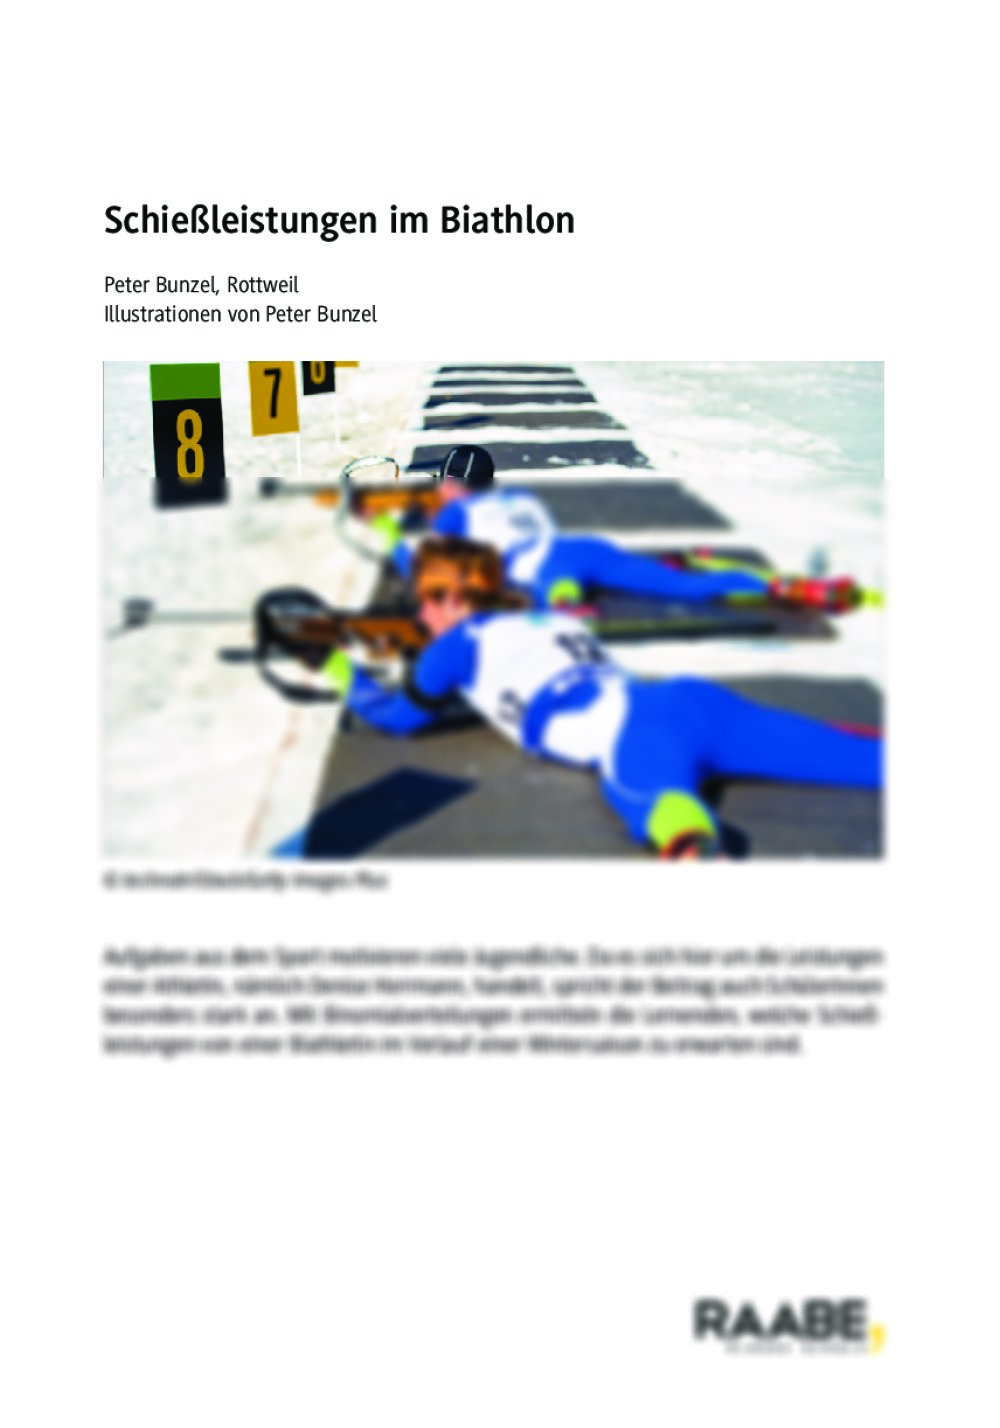 Schießleistungen im Biathlon stochastisch betrachtet - Seite 1